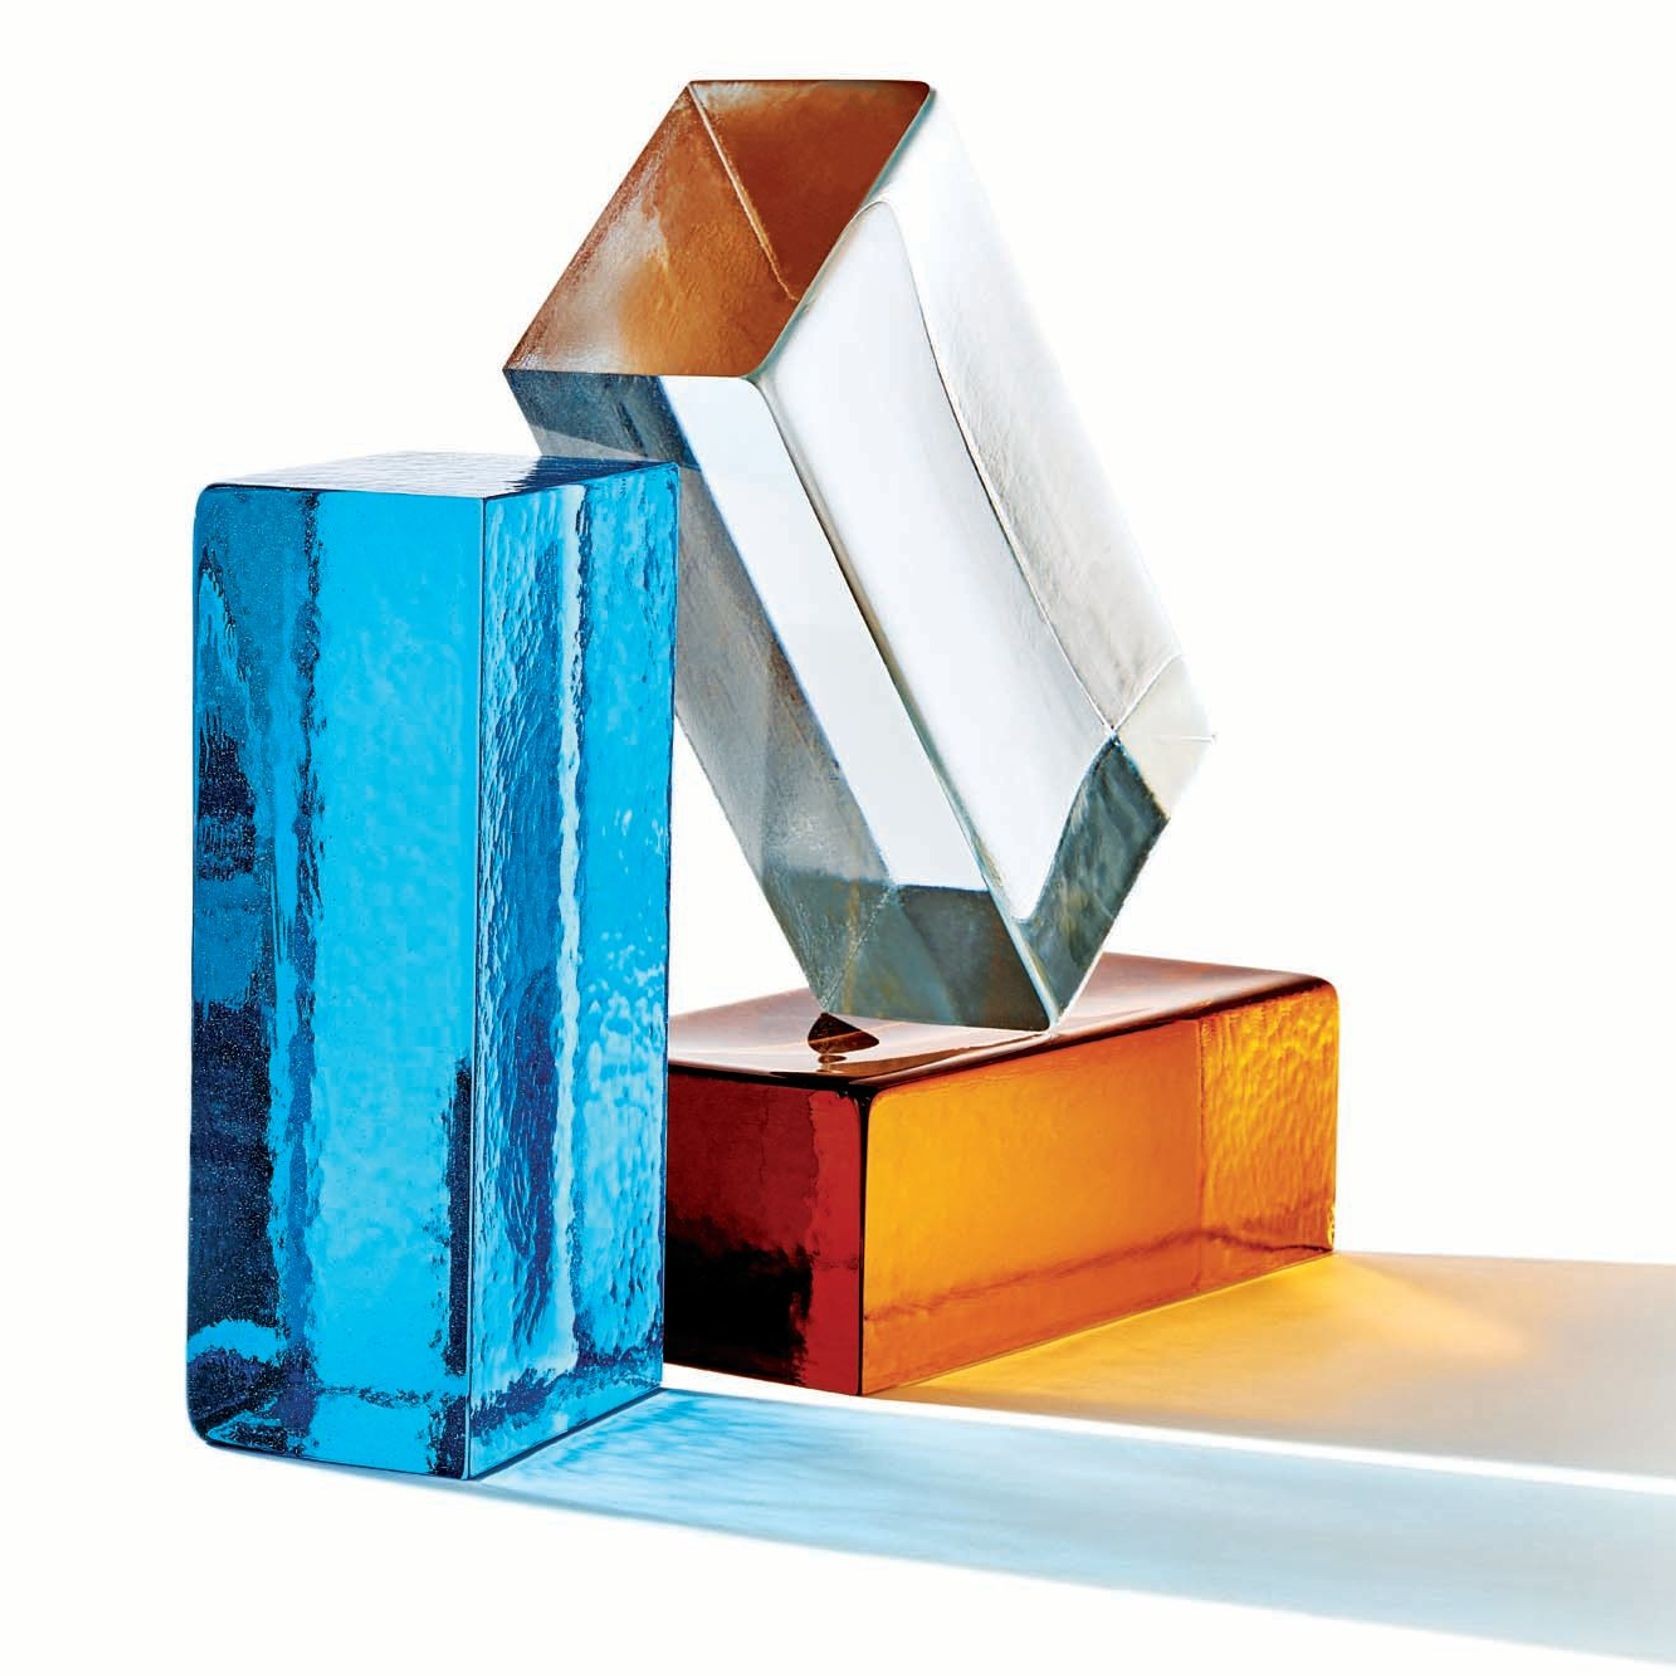 Golden Amber - Venetian Glass | Austral Bricks gallery detail image